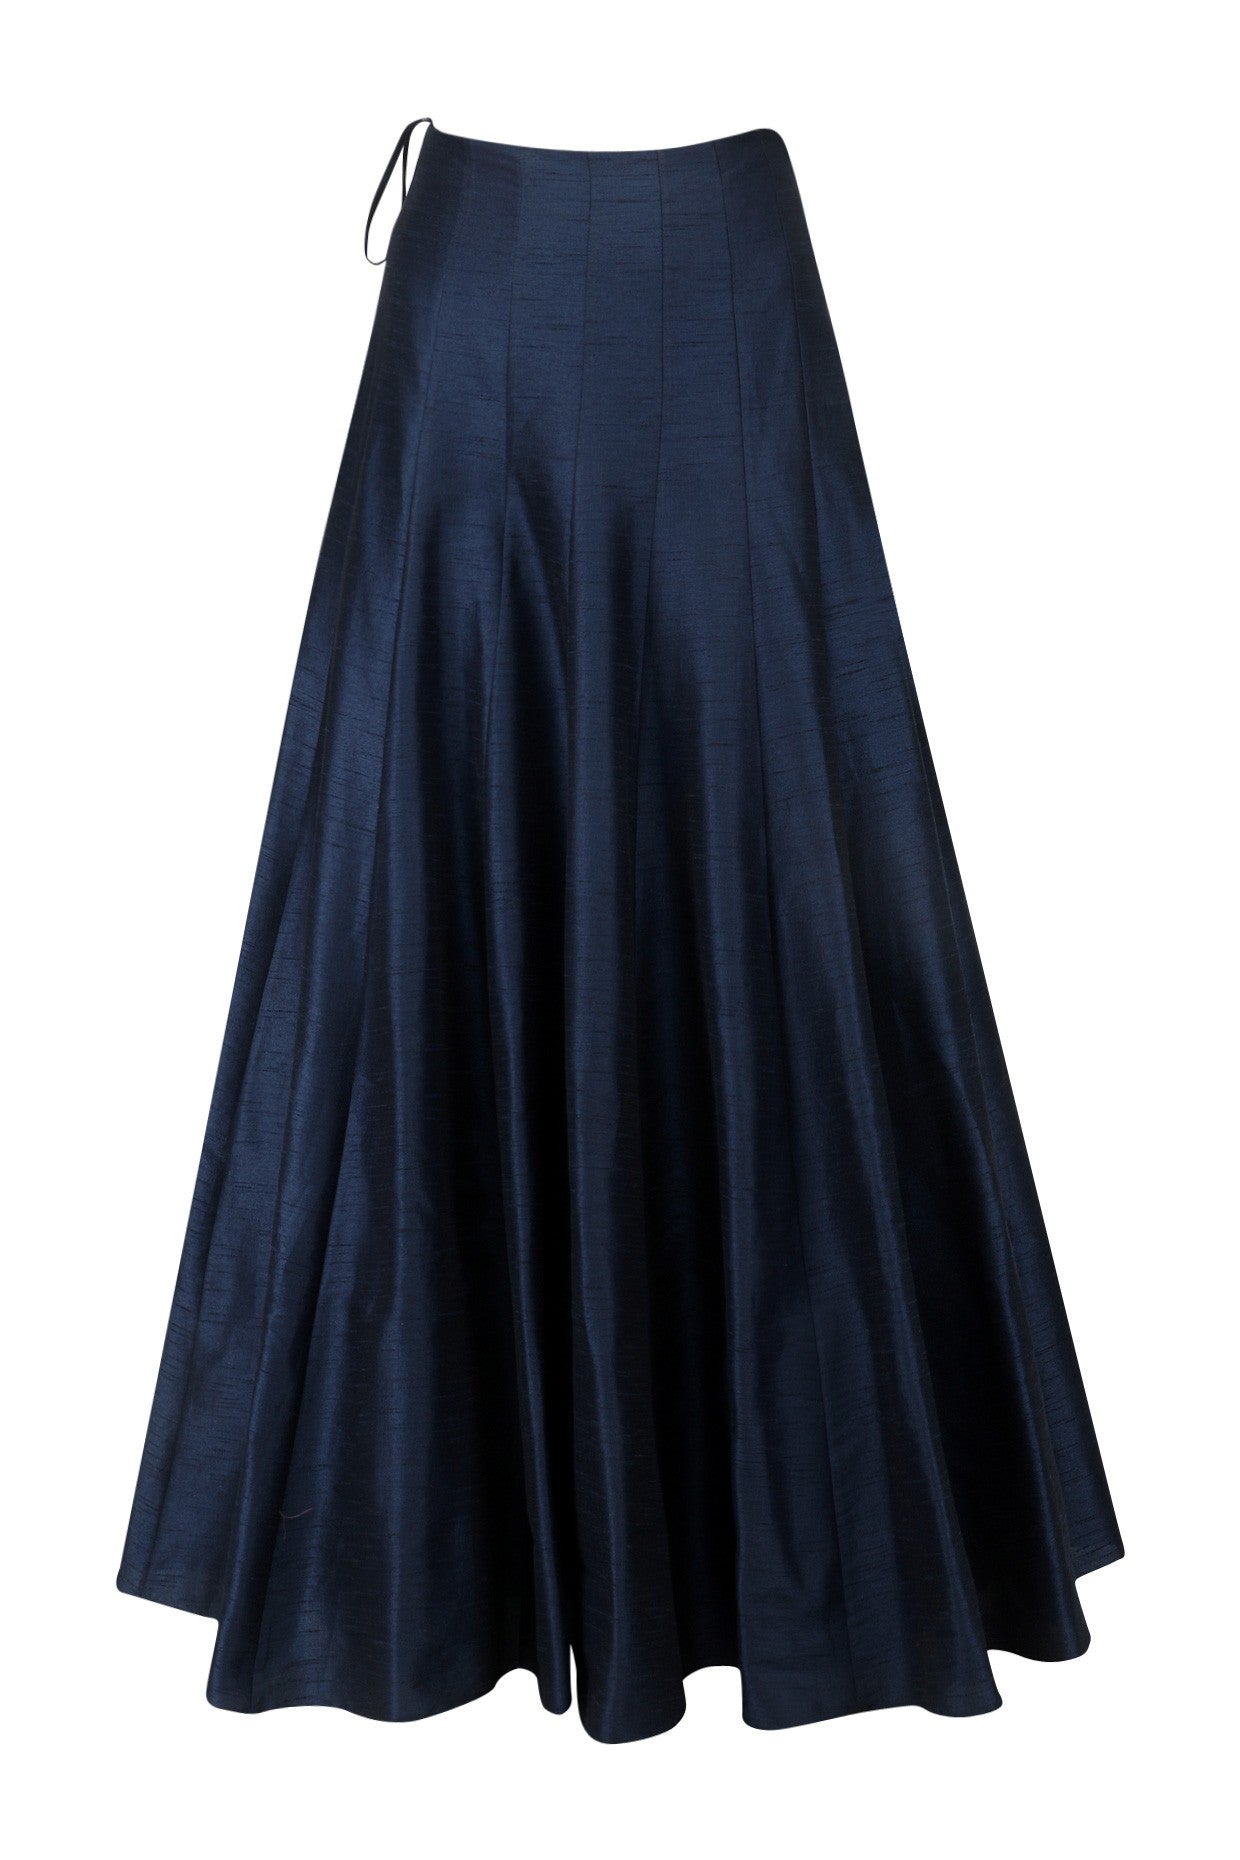 Deep Blue Color Party Lehenga Choli – Panache Haute Couture